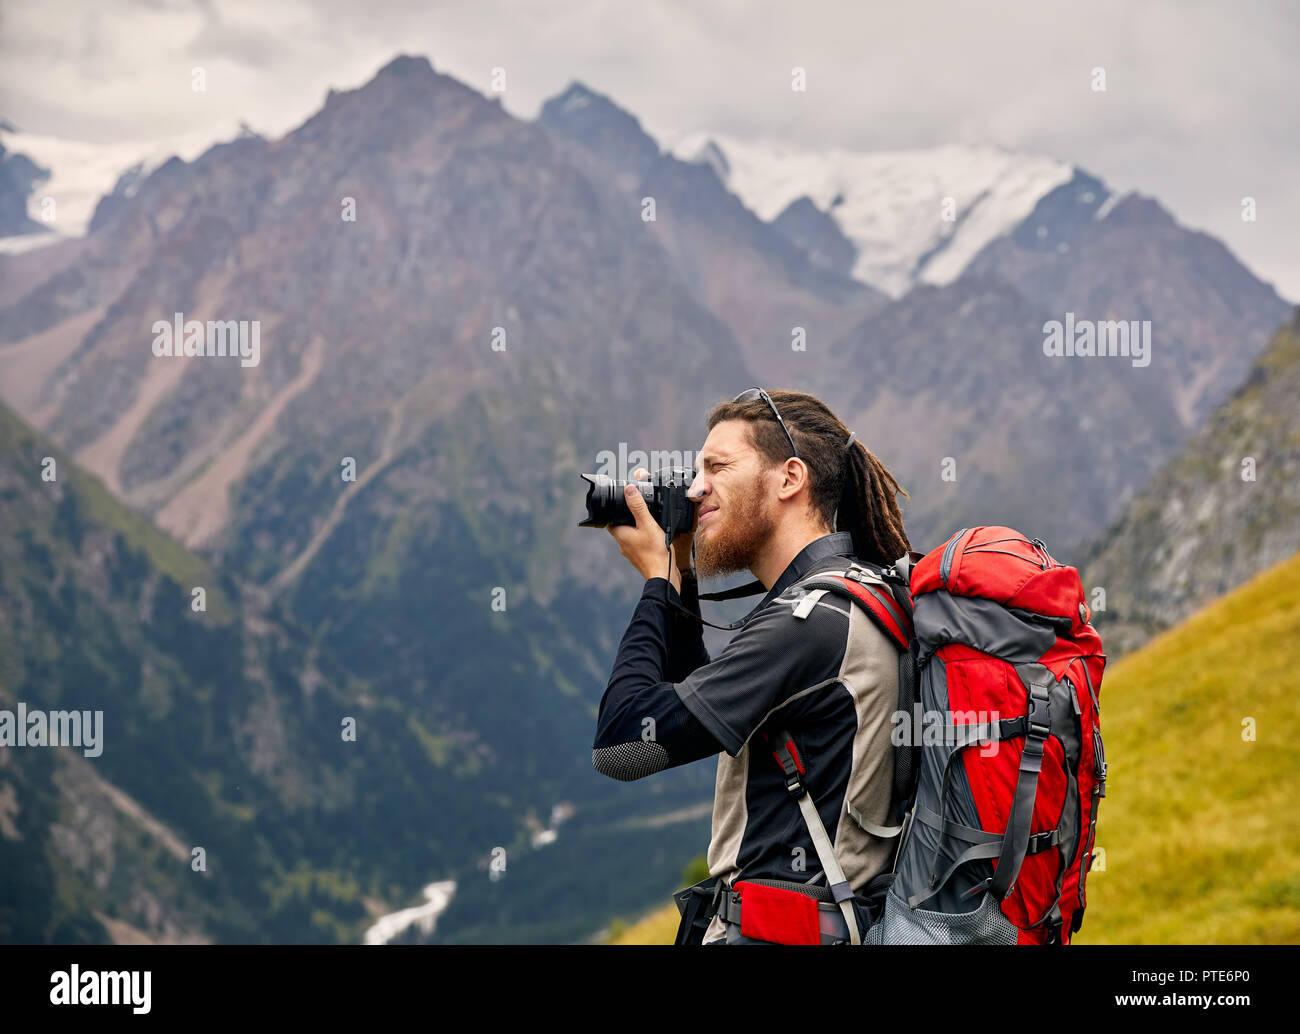 L'uomo fotografo con grande zaino e tenendo la fotocamera foto di montagna. Stile di vita viaggio avventura concetto vacanze attive outdoor Foto Stock